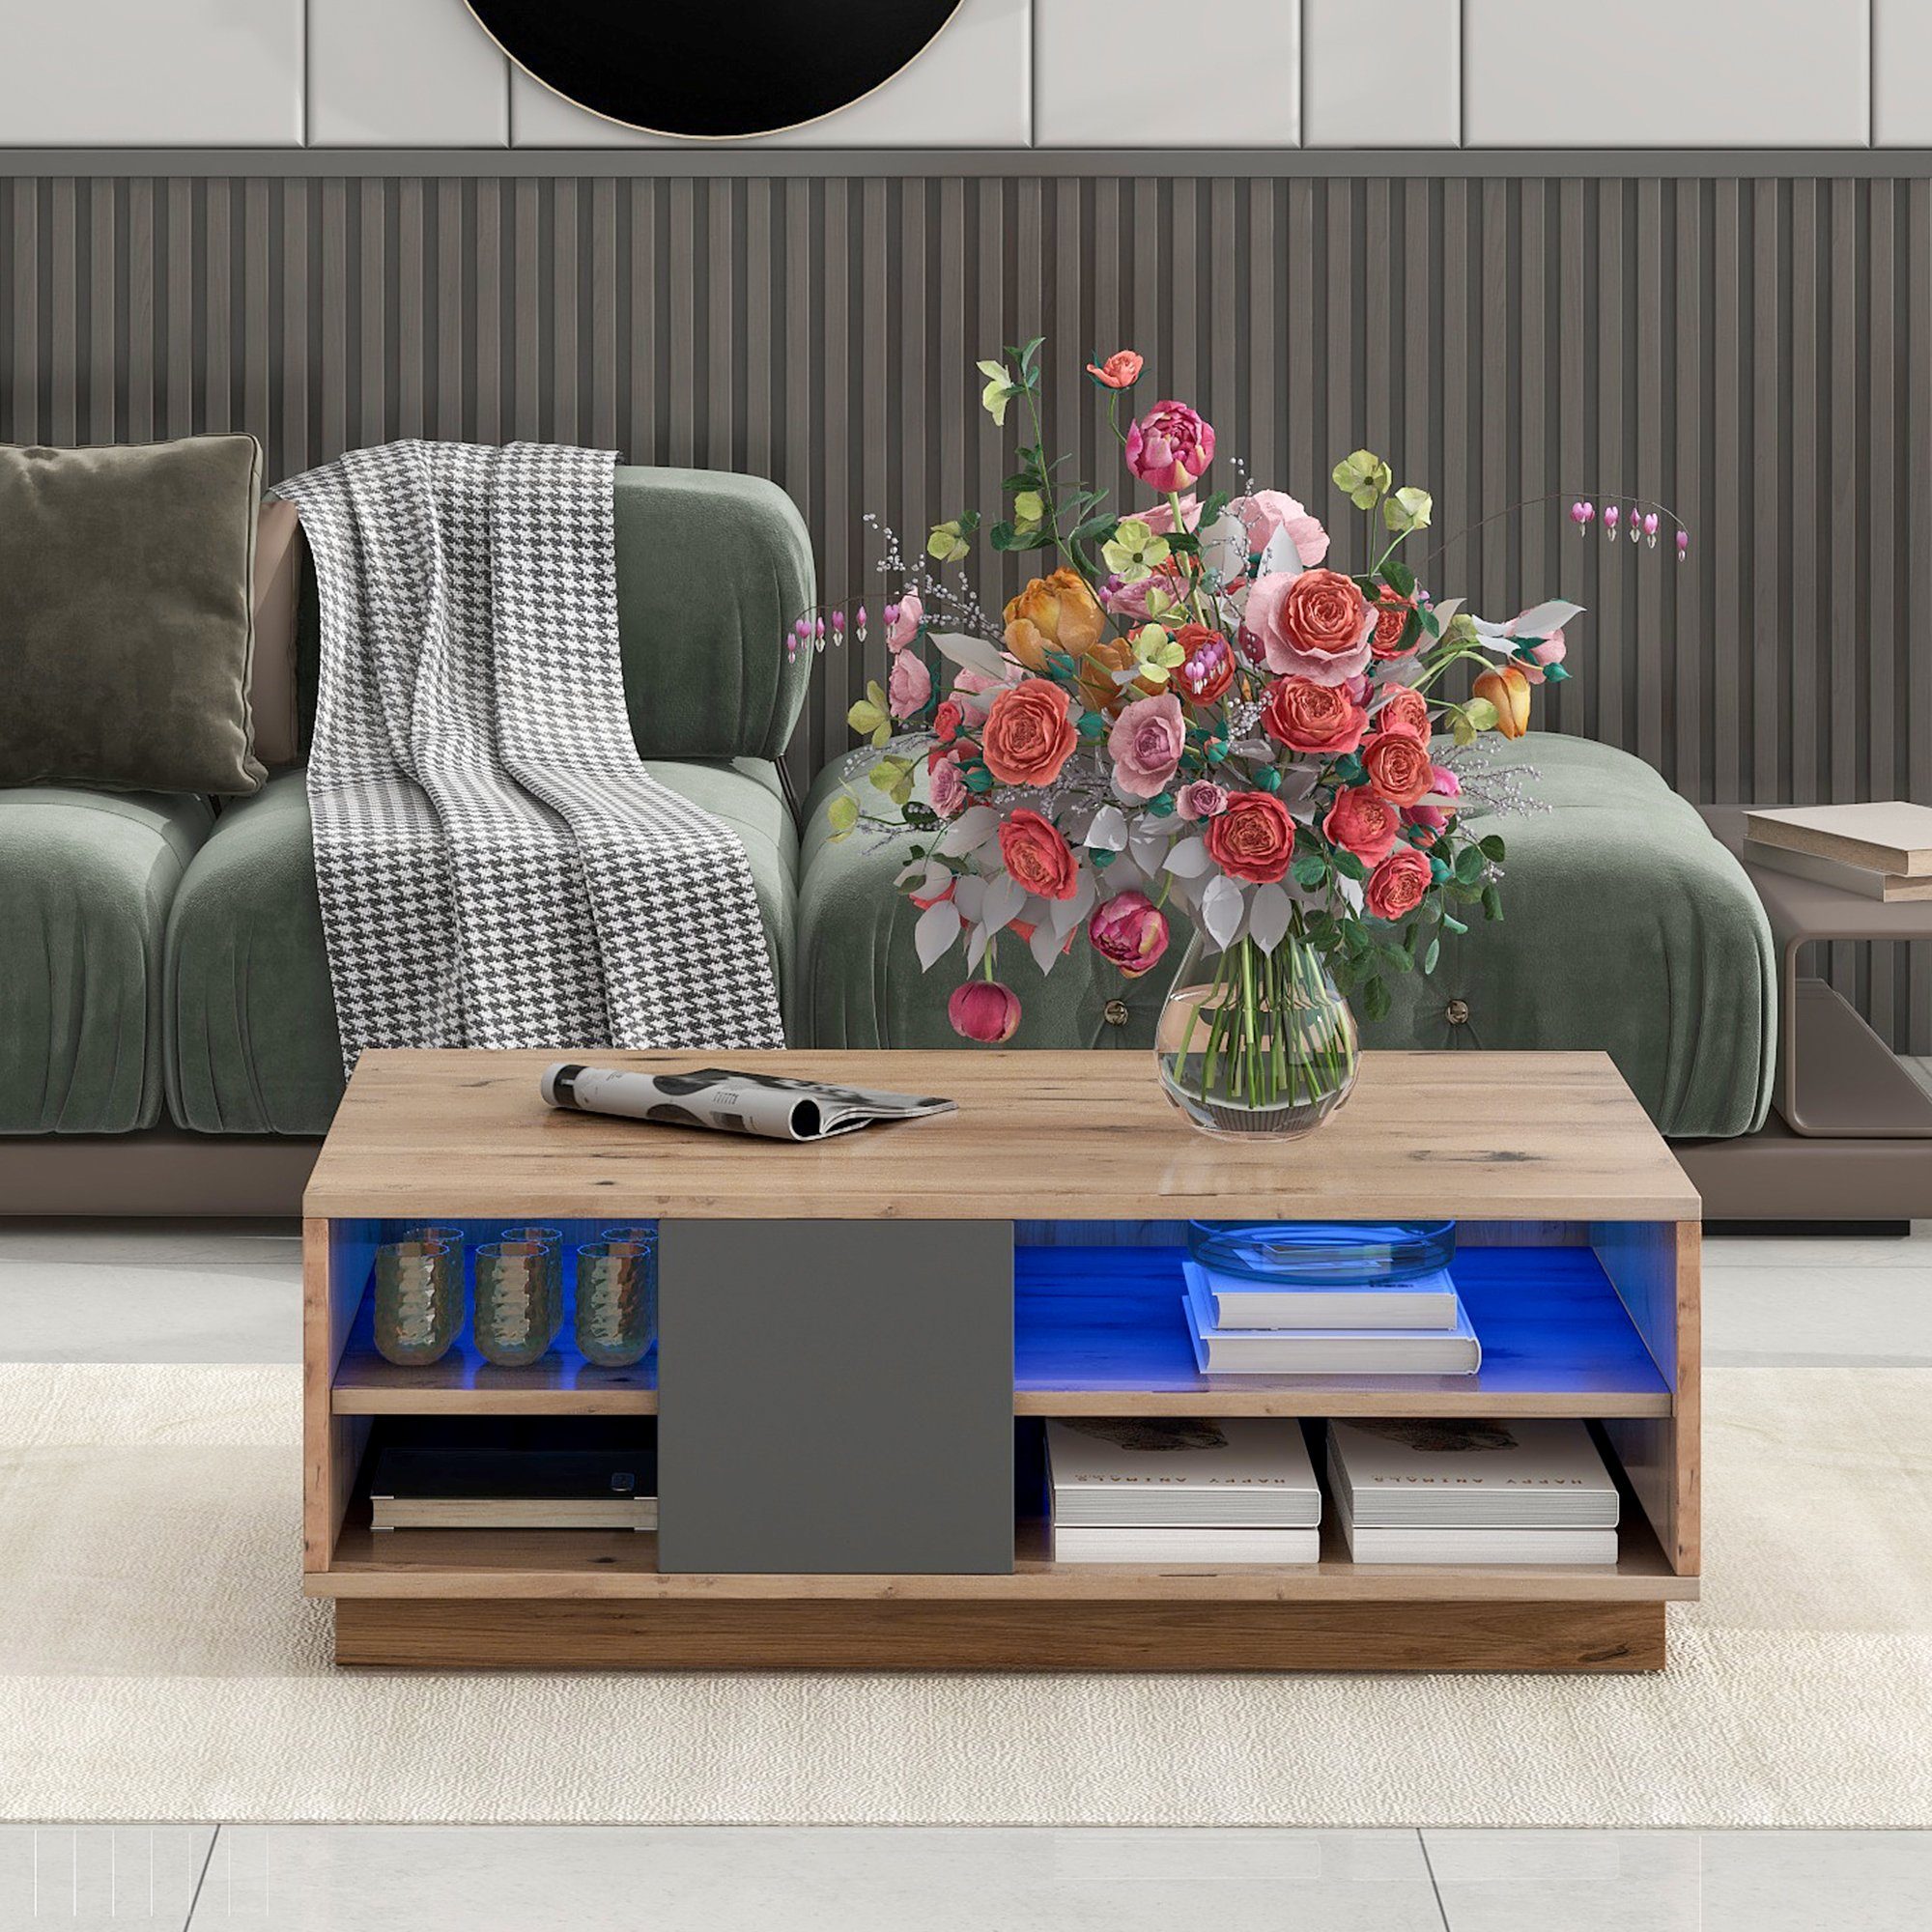 Mosaik-Couchtisch, im Wohnzimmermöbel moderne Originalfarbener WISHDOR zweifarbiger Blockstil Couchtisch